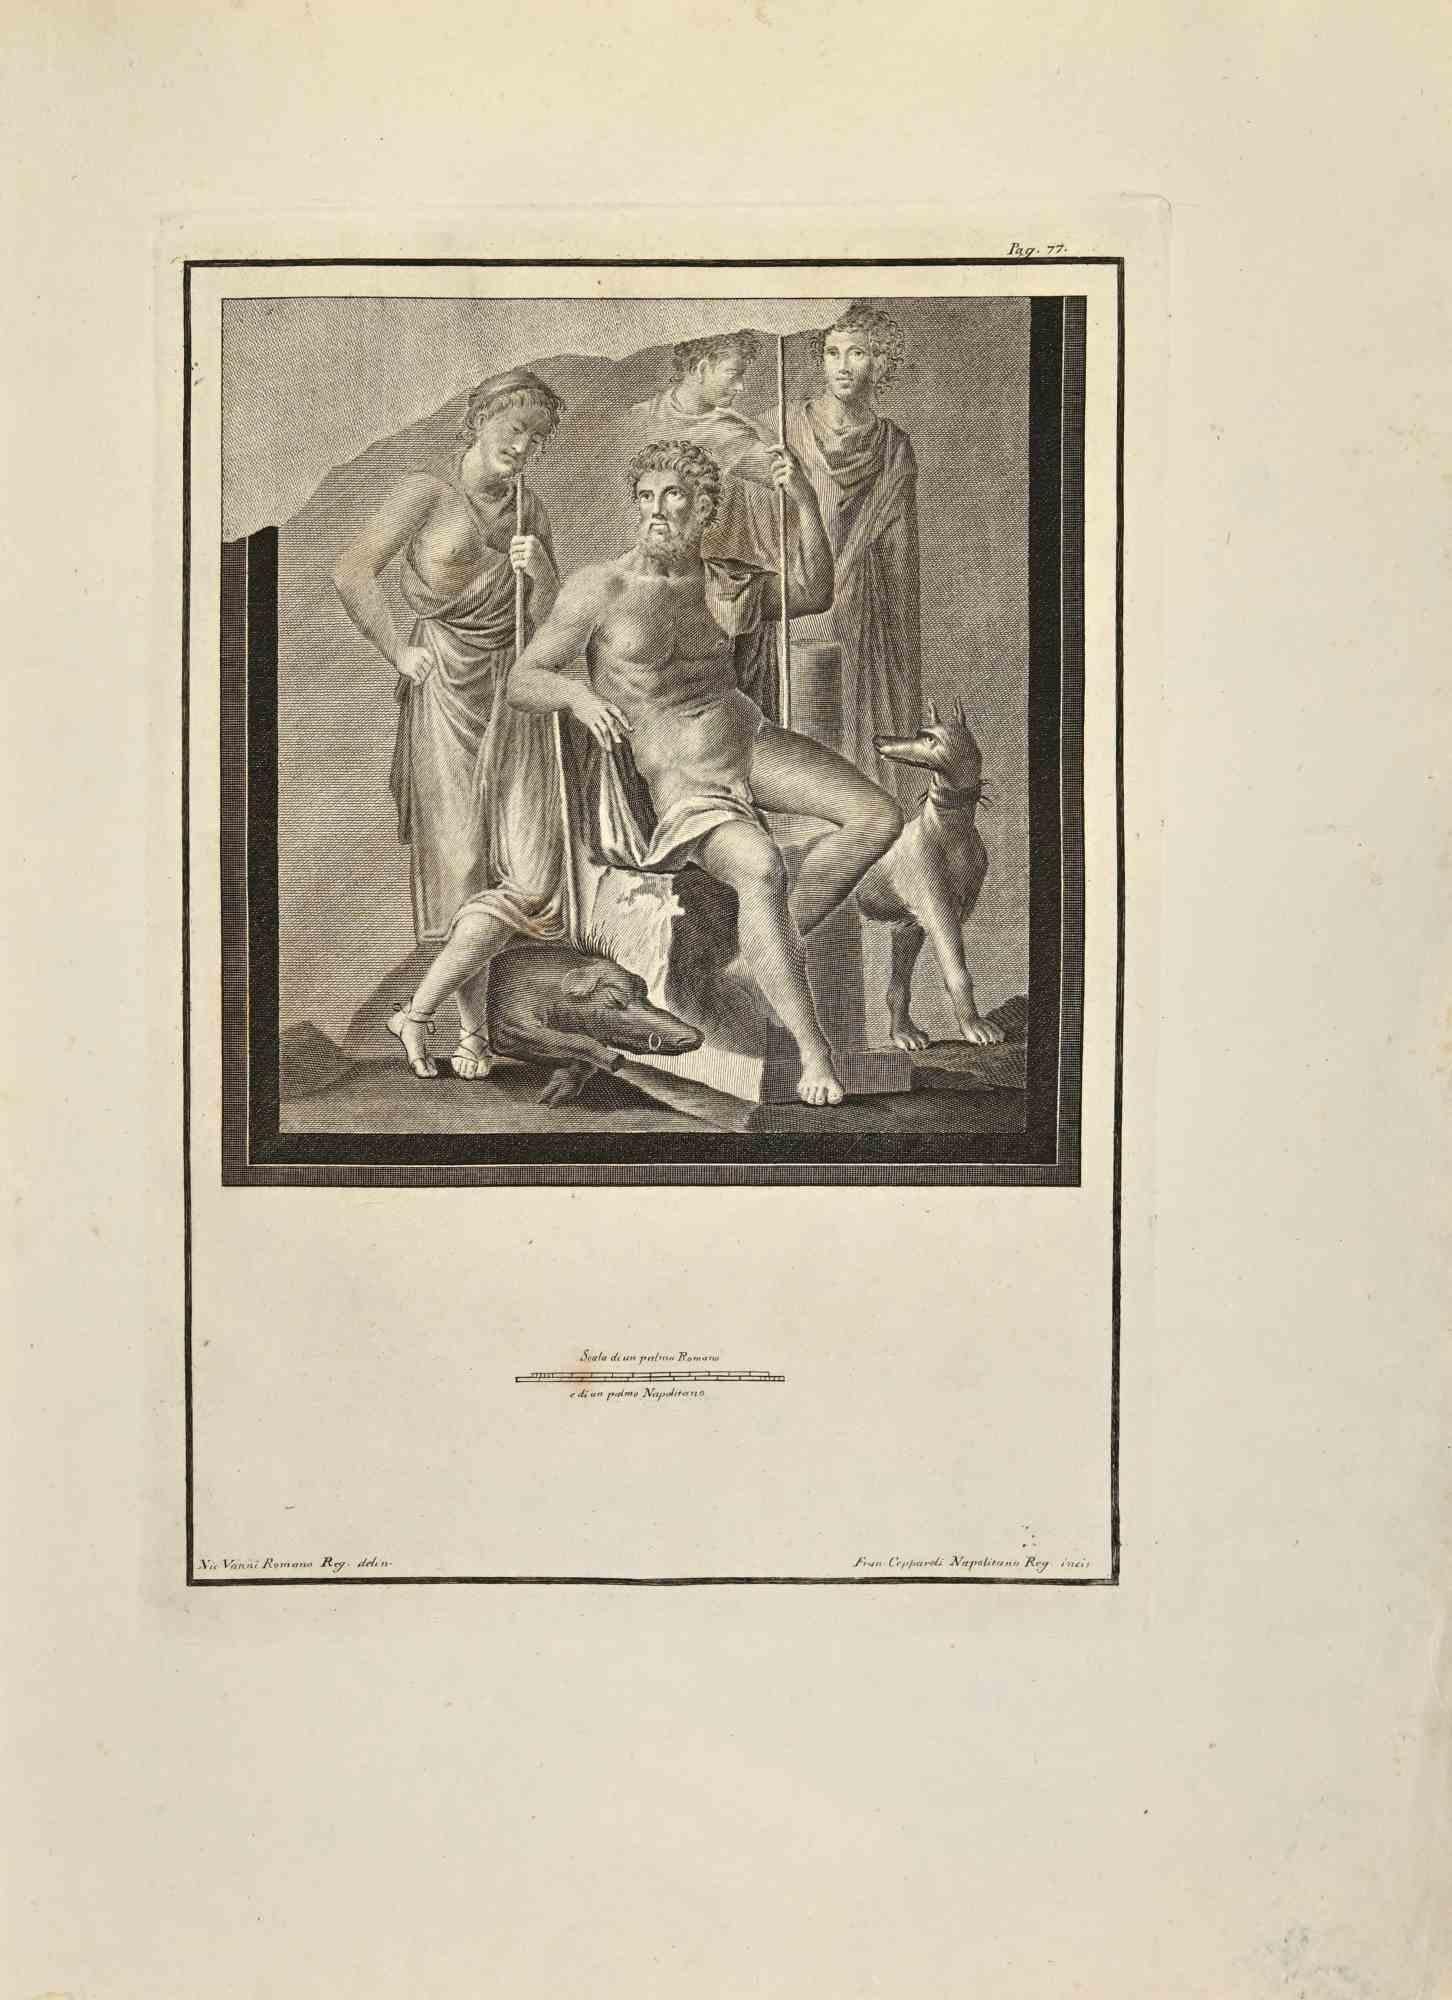 Gaius Marius général romain tiré des "Antiquités d'Herculanum" est une gravure sur papier réalisée par Francesco Cepparoli au 18e siècle.

Signé sur la plaque.

Bon état, marges vieillies avec quelques pliages.

La gravure appartient à la suite